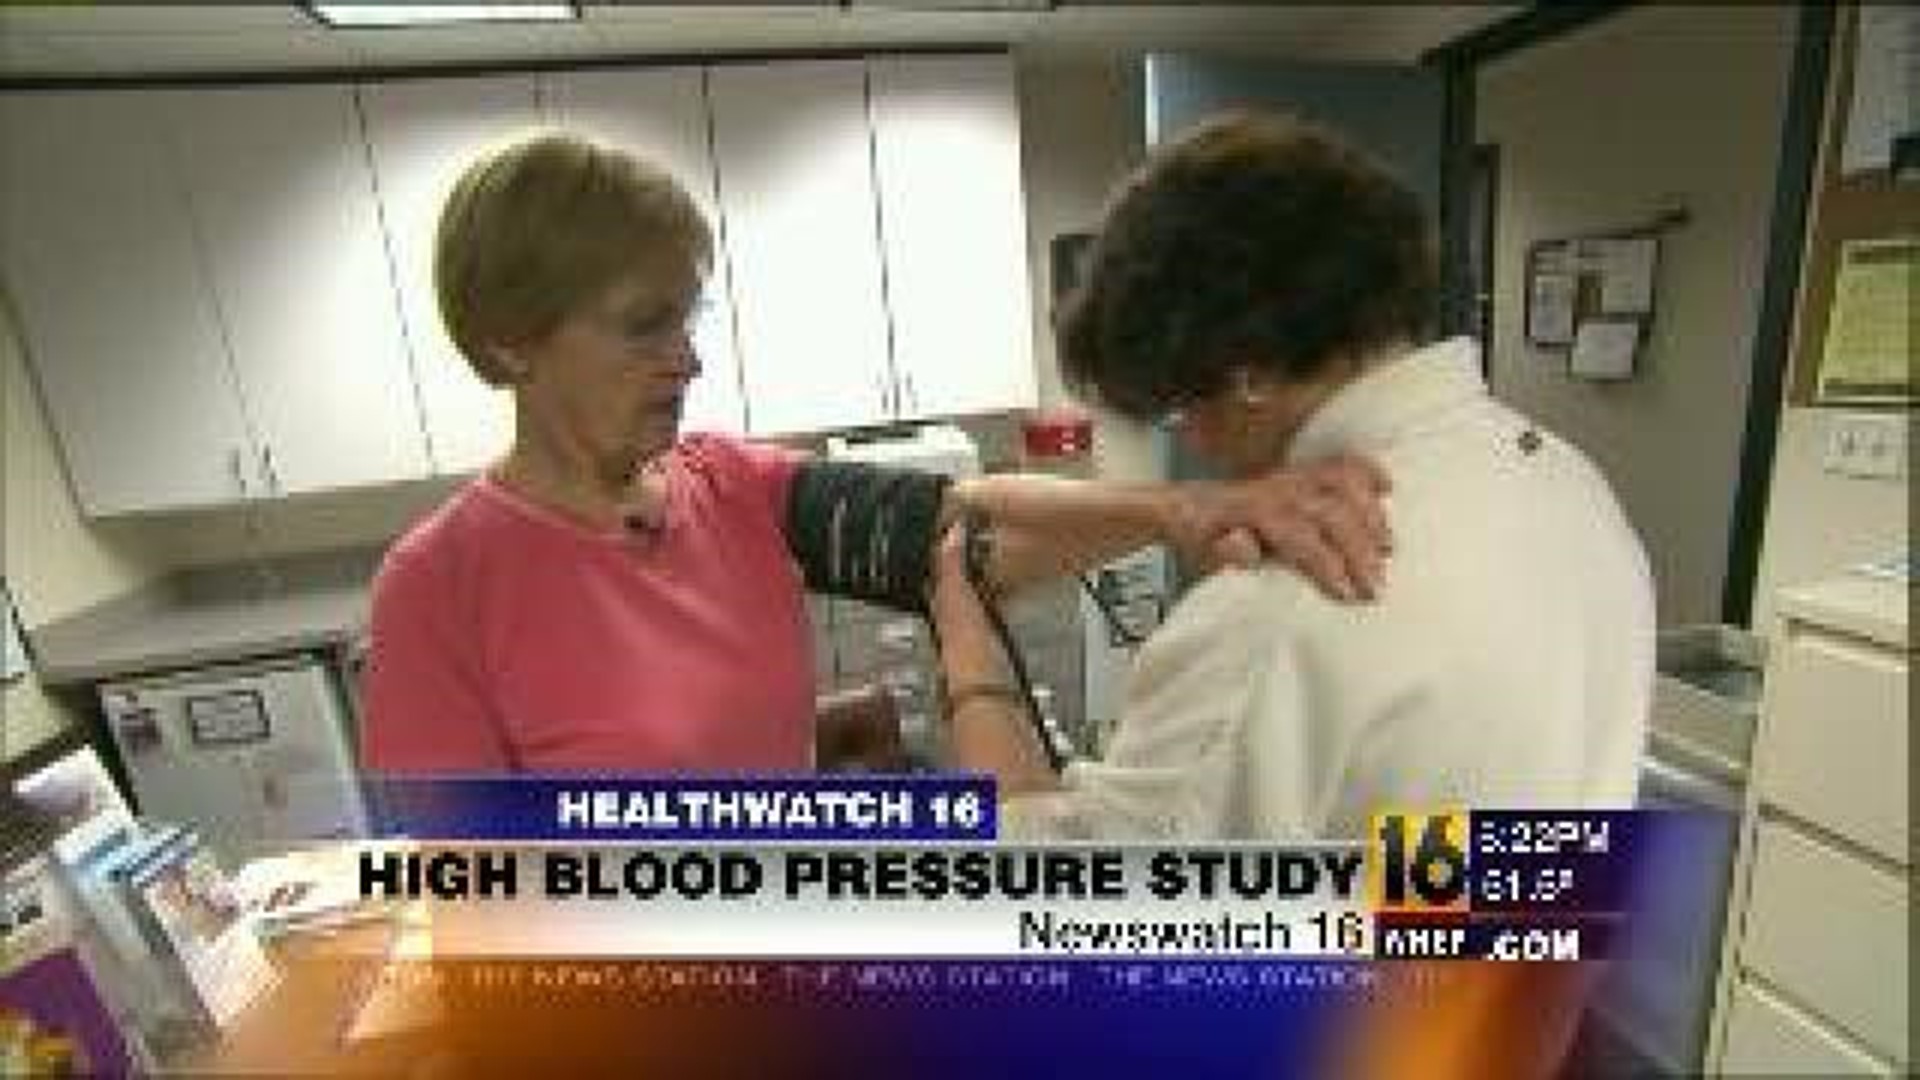 Healthwatch 16 High Blood Pressure Study